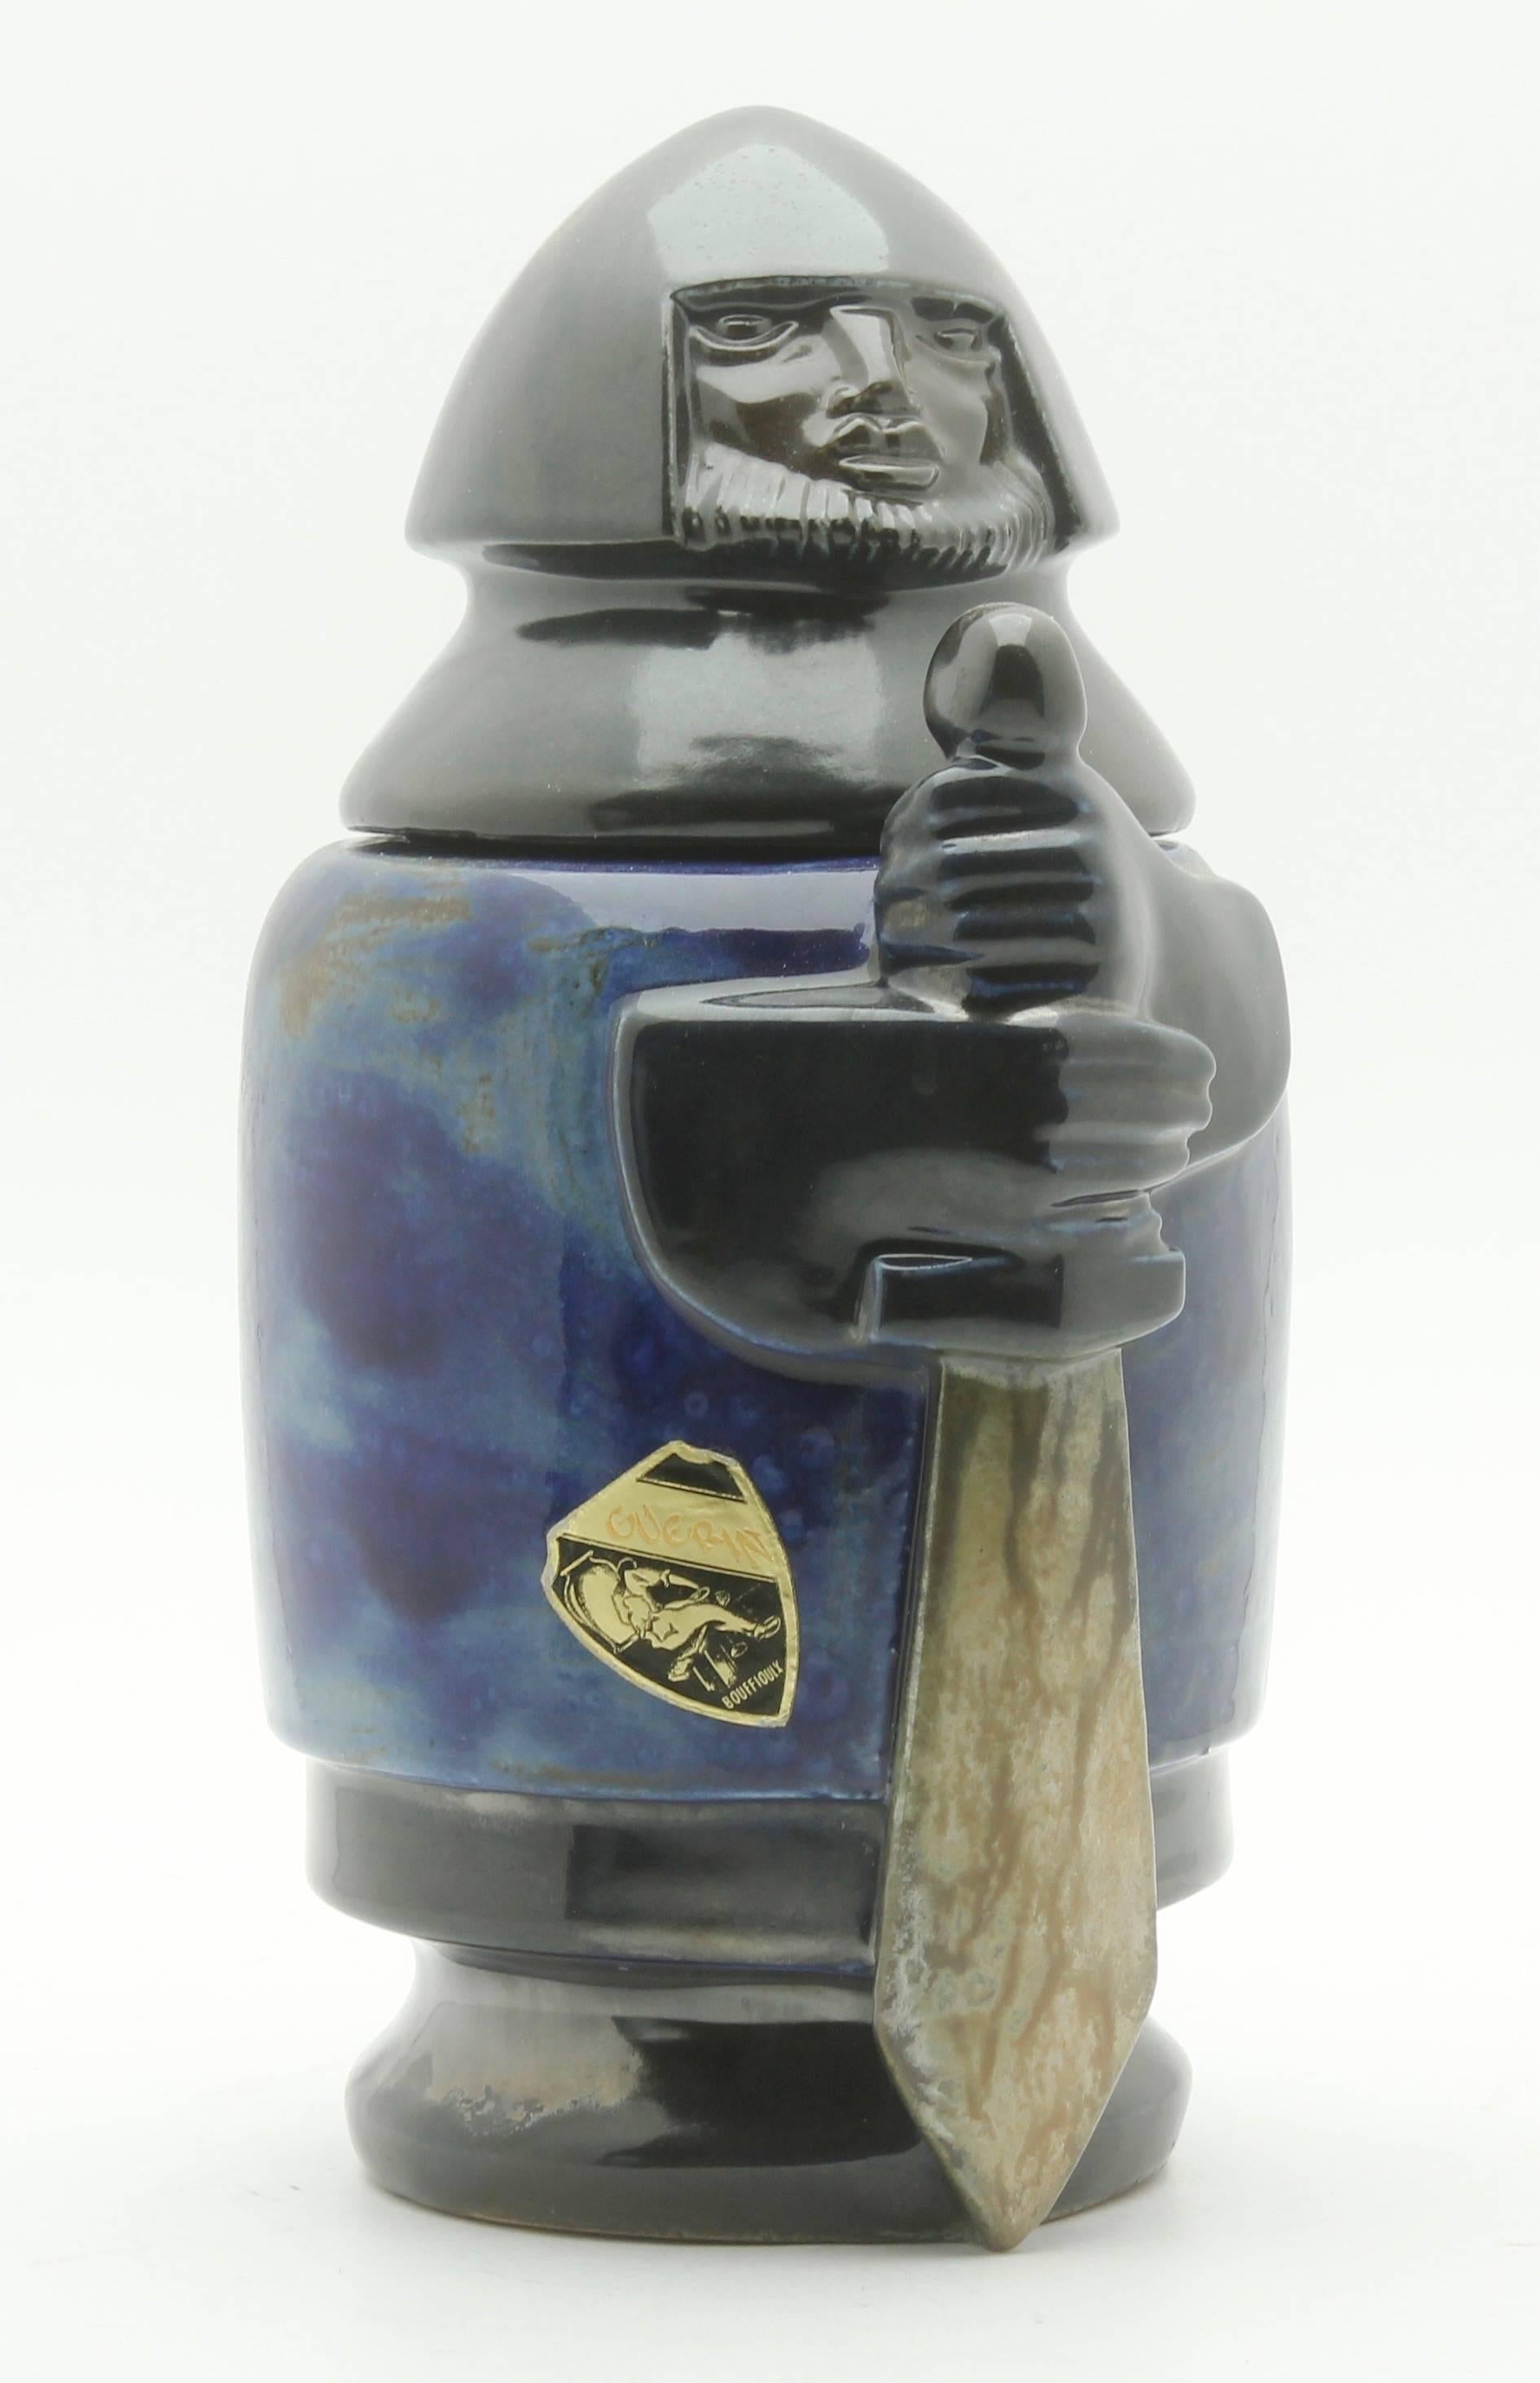 Roger Guerin Bouffioulx Pot à tabac en poterie d'art belge avec couvercle, vers 1927
Un véritable trésor pour le collectionneur de céramiques.

  

    

  
  








    





























